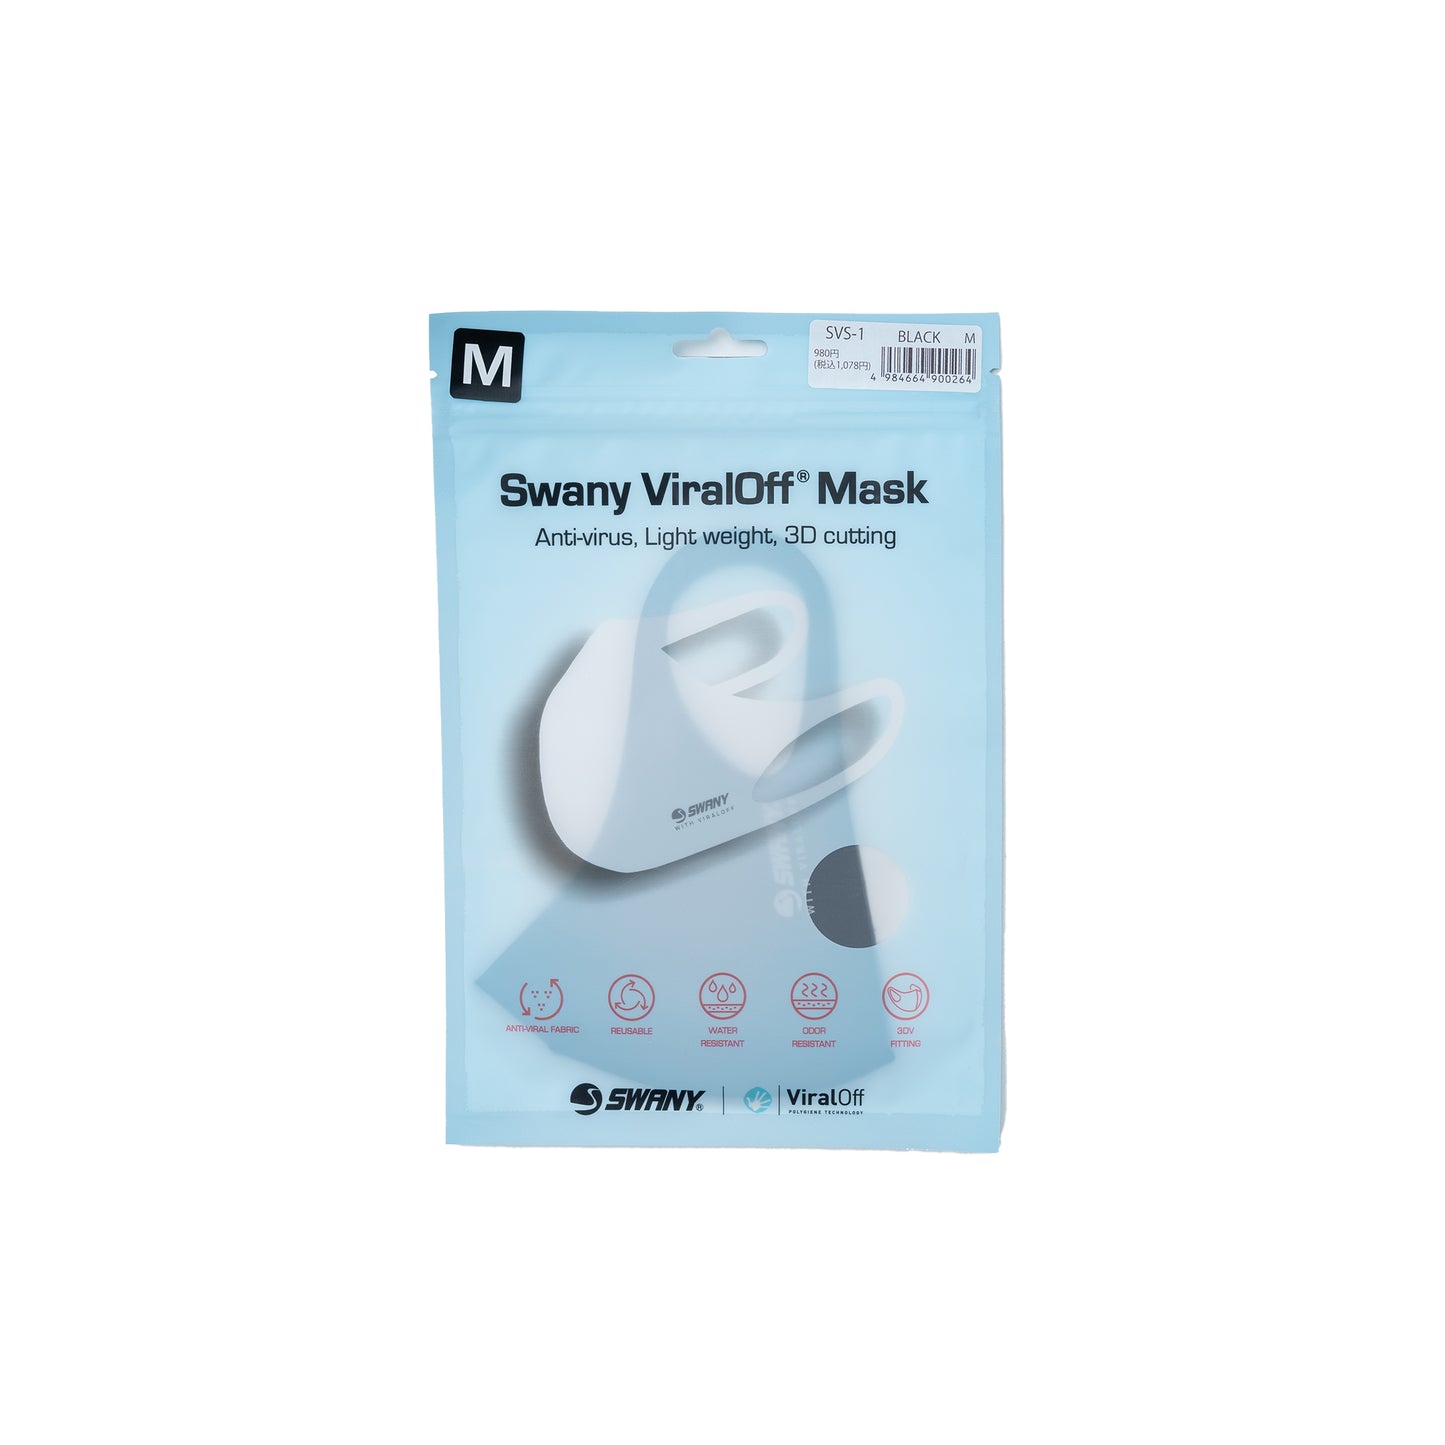 SVS-1 ViraliOff Mask